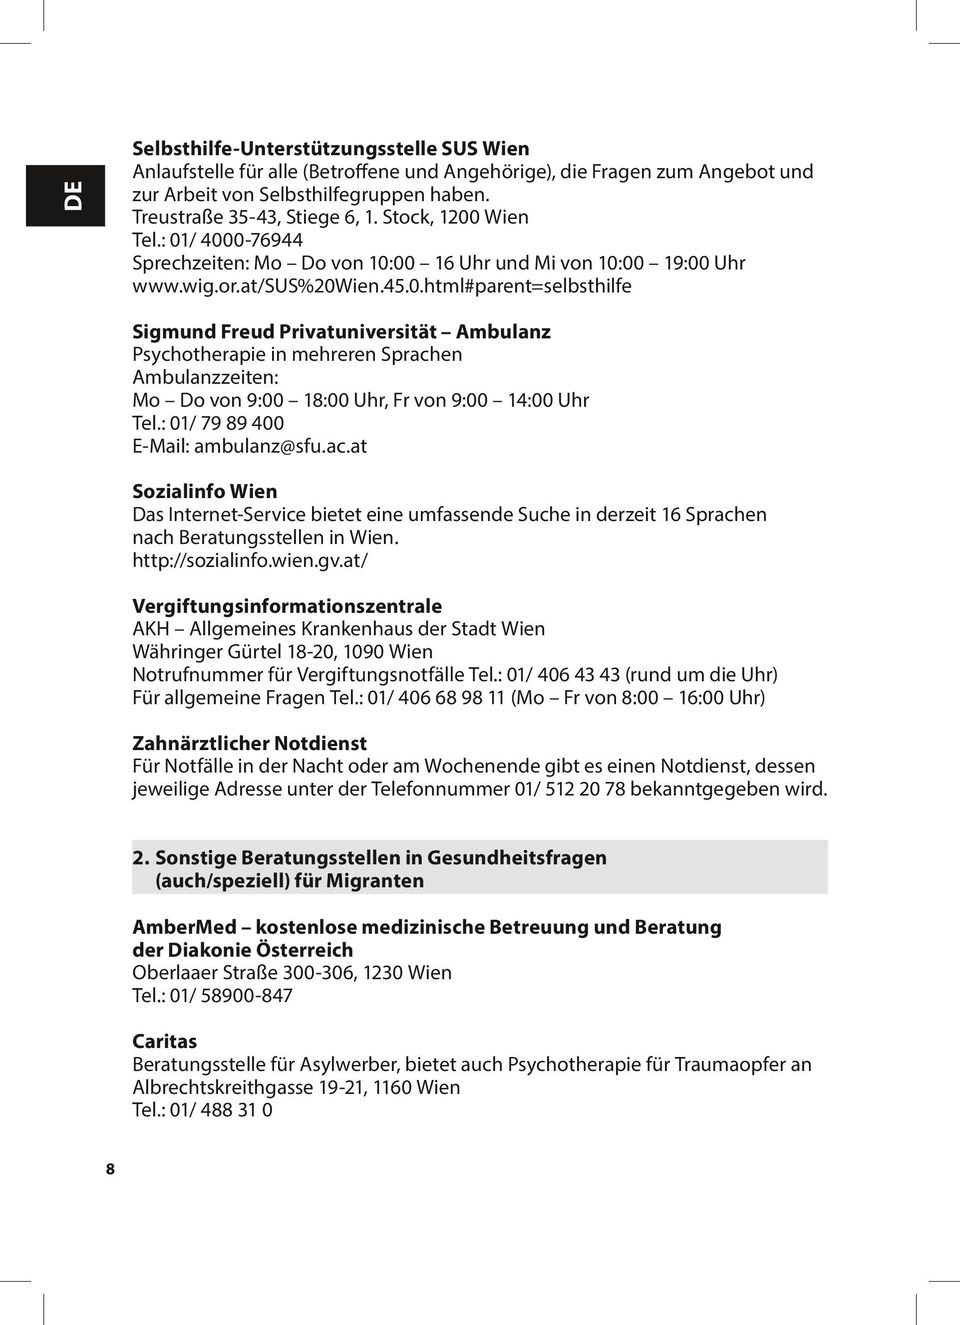 : 01/ 79 89 400 E-Mail: ambulanz@sfu.ac.at Sozialinfo Wien Das Internet-Service bietet eine umfassende Suche in derzeit 16 Sprachen nach Beratungsstellen in Wien. http://sozialinfo.wien.gv.